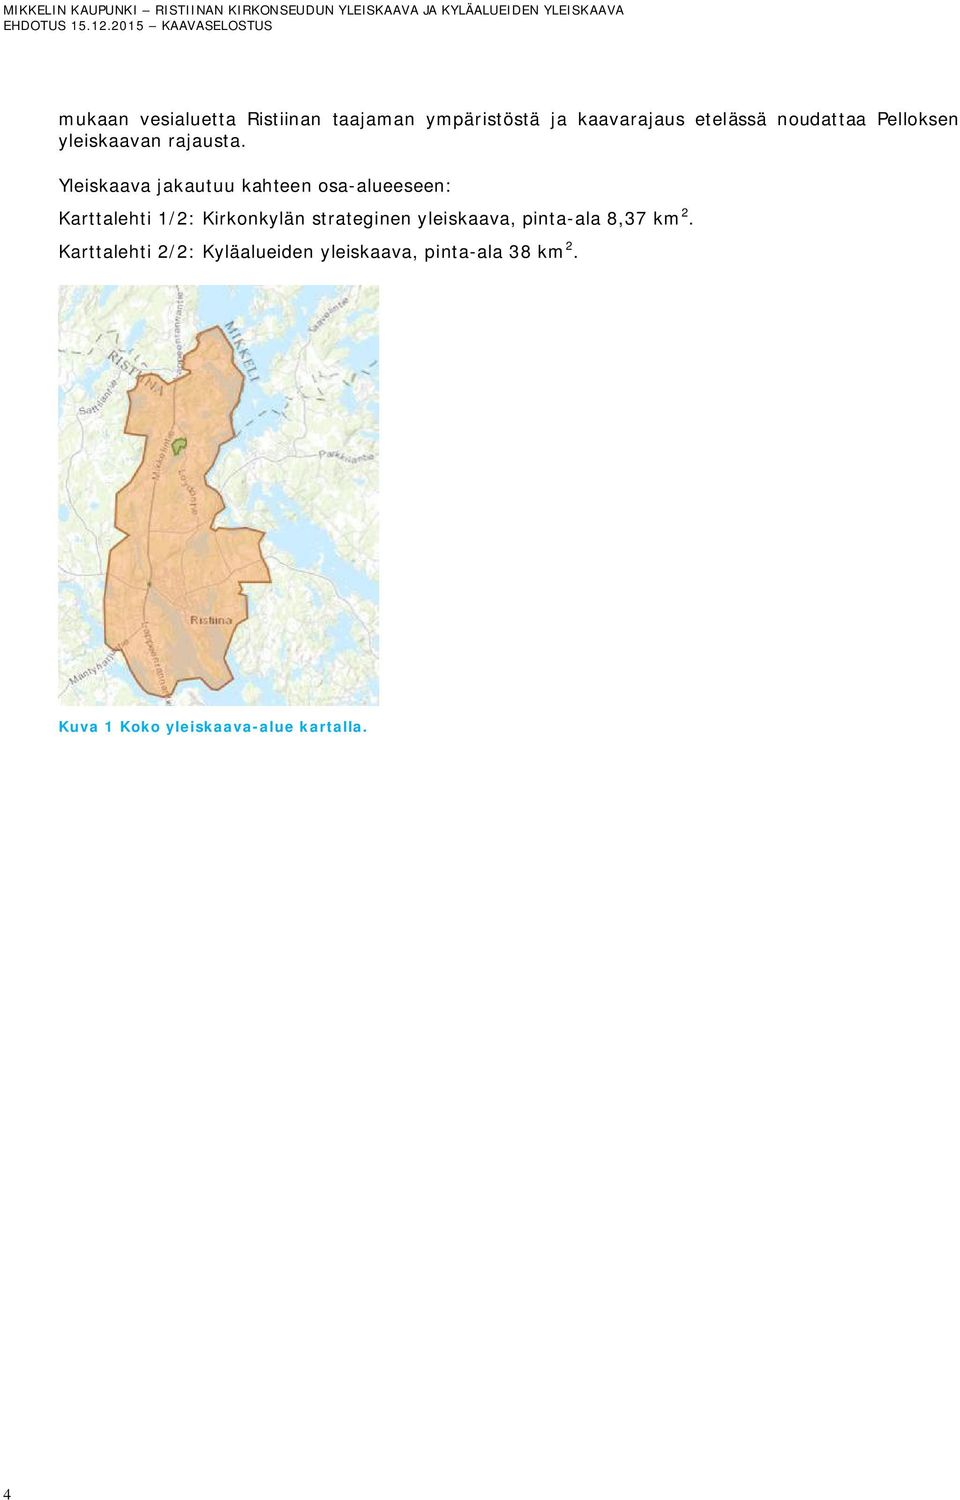 Yleiskaava jakautuu kahteen osa-alueeseen: Karttalehti 1/2: Kirkonkylän strateginen